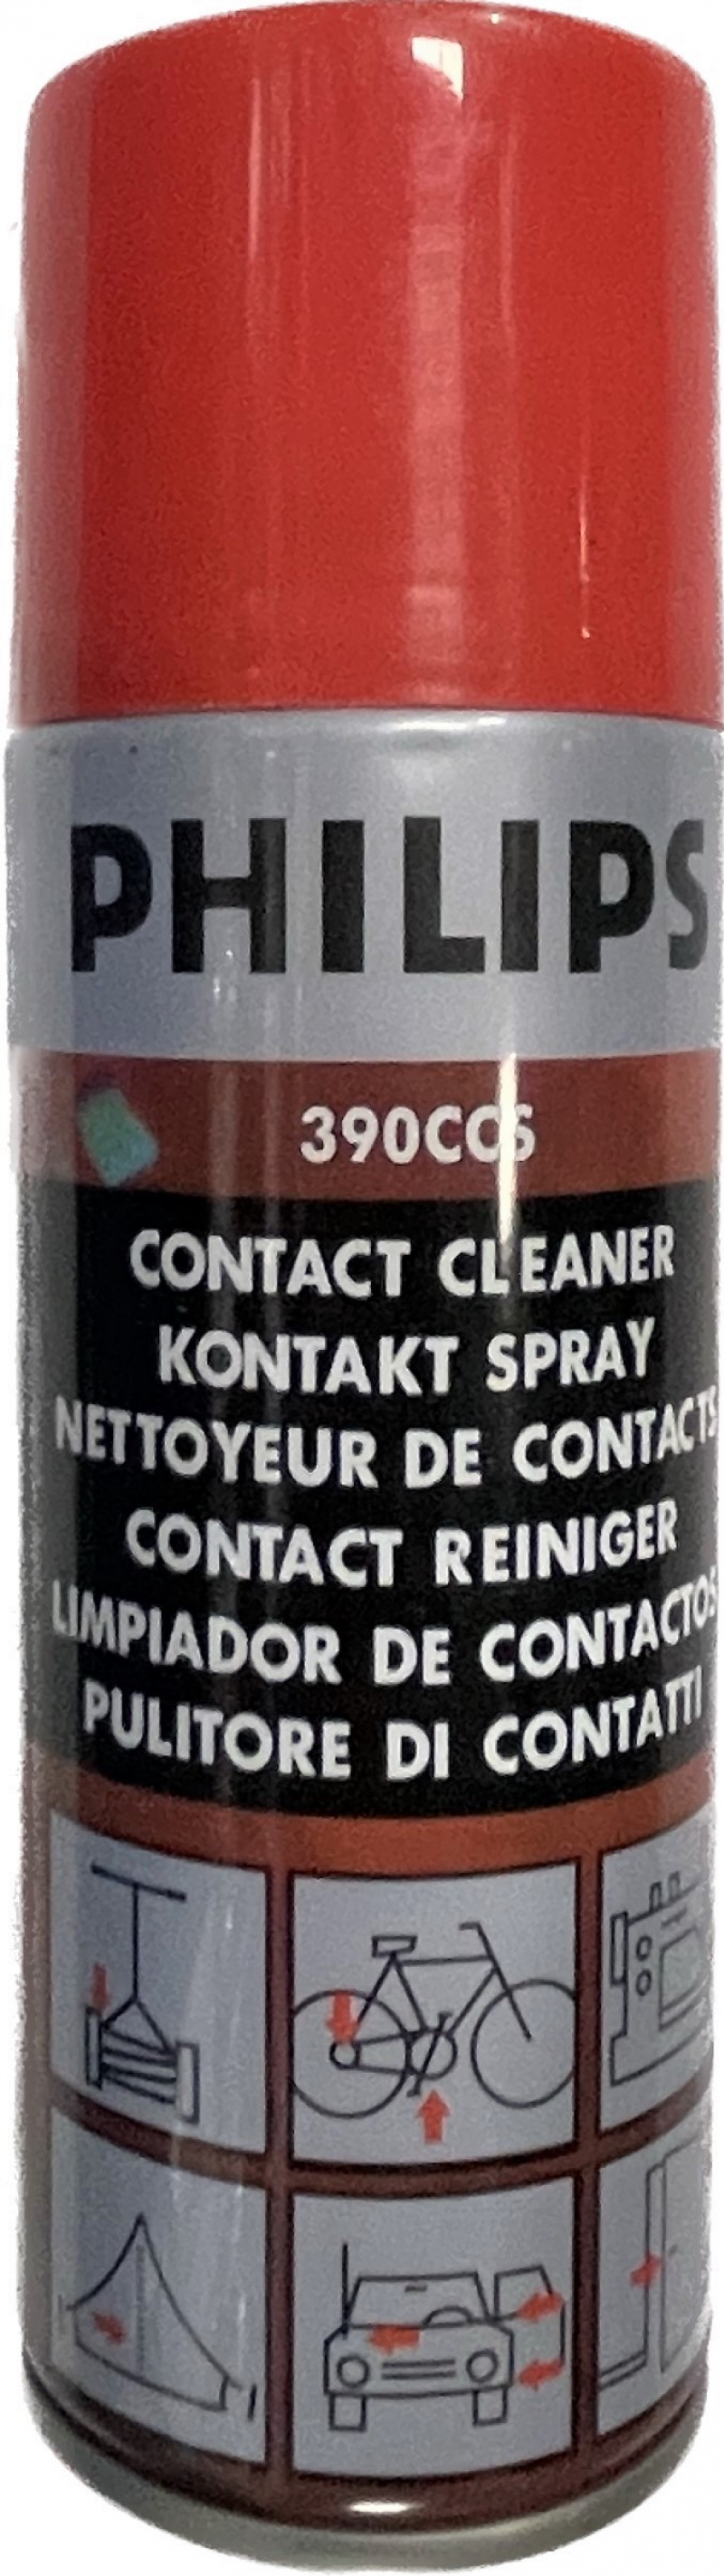 สเปรย์น้ำยาทำความสะอาดแผงวงจร อเนกประสงค์ Philips 390CCS